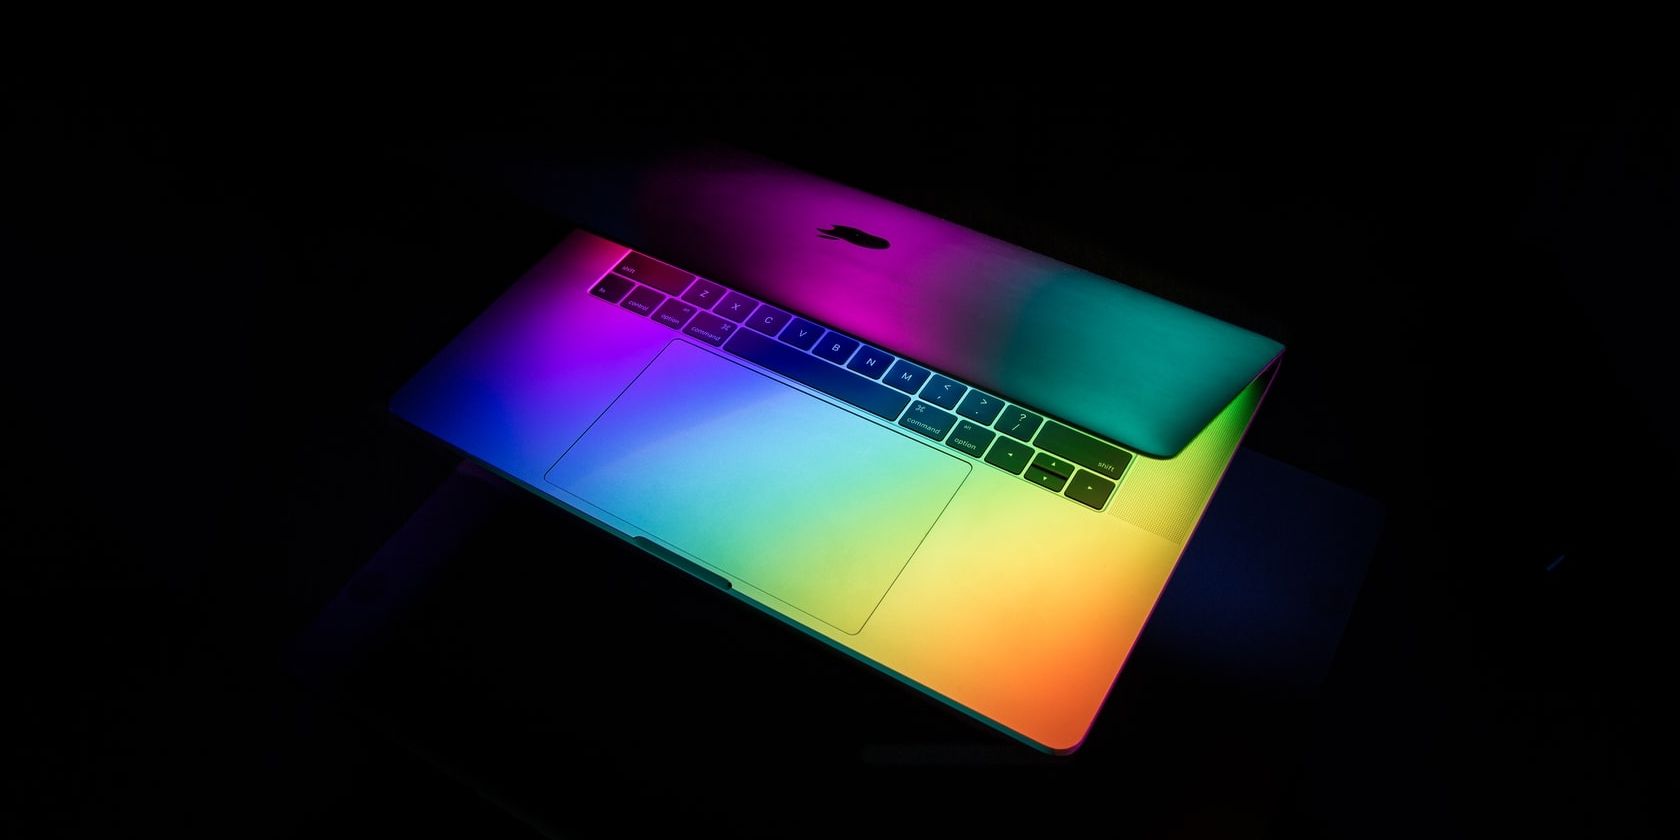 Half open Macbook with raindow-colored lighting.